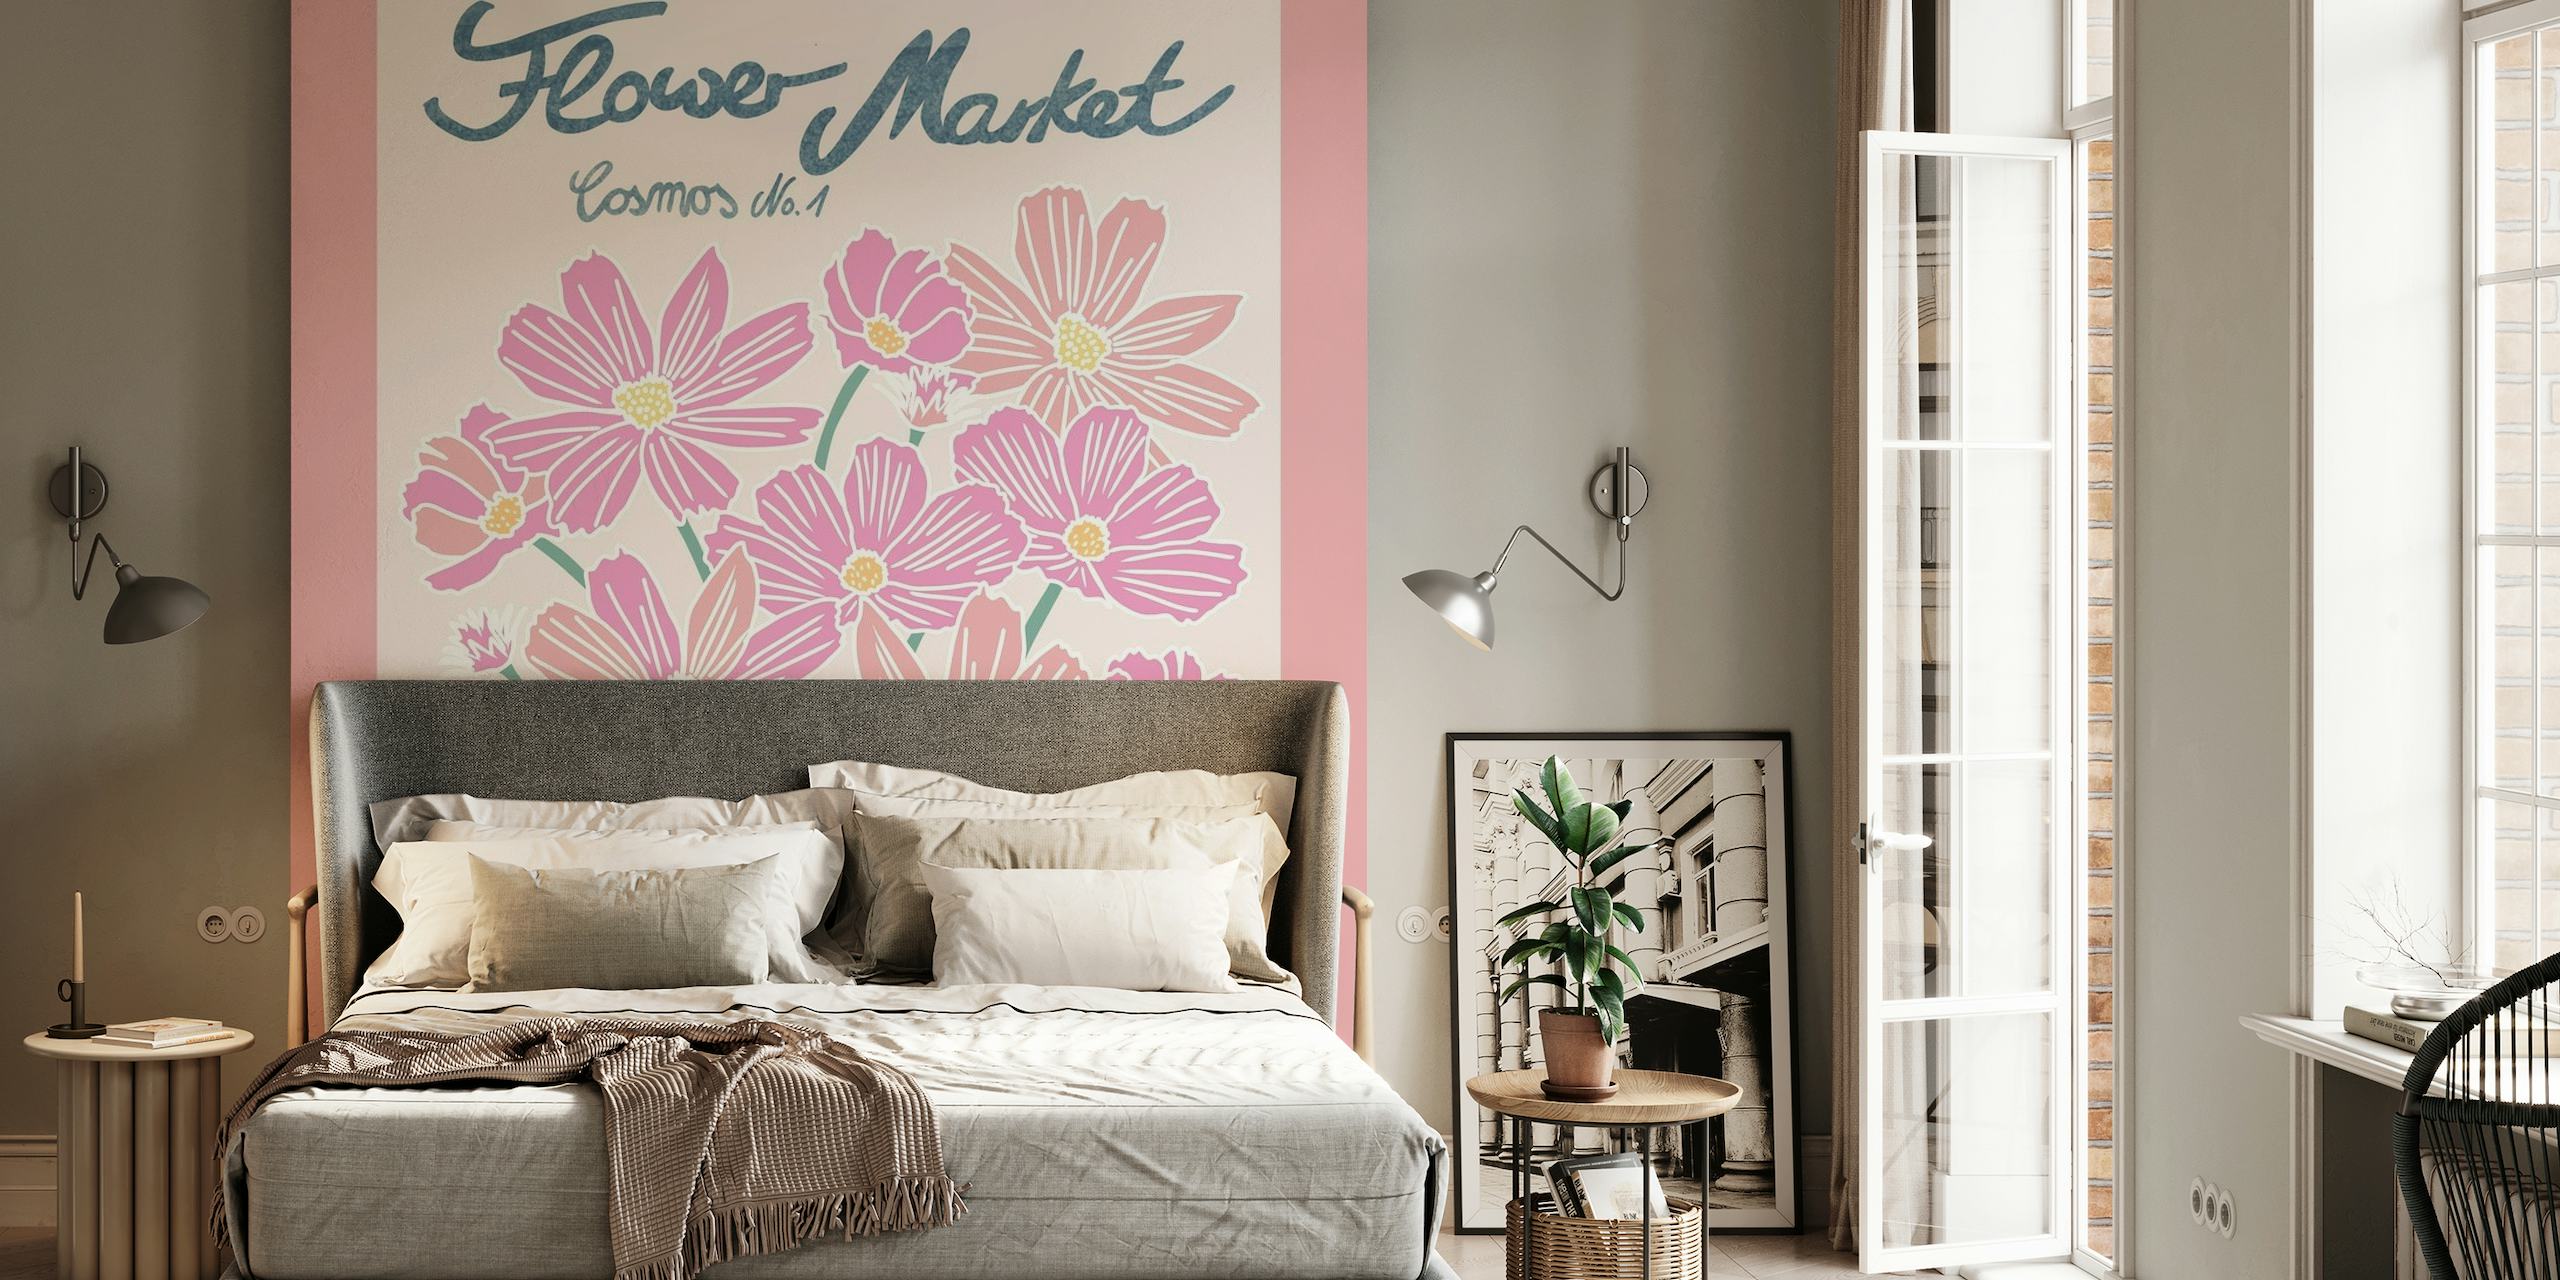 Illustration einer Fototapete mit rosa Kosmosblumen auf pastellfarbenem Hintergrund mit dem Titel „Flower Market Cosmos 1“.